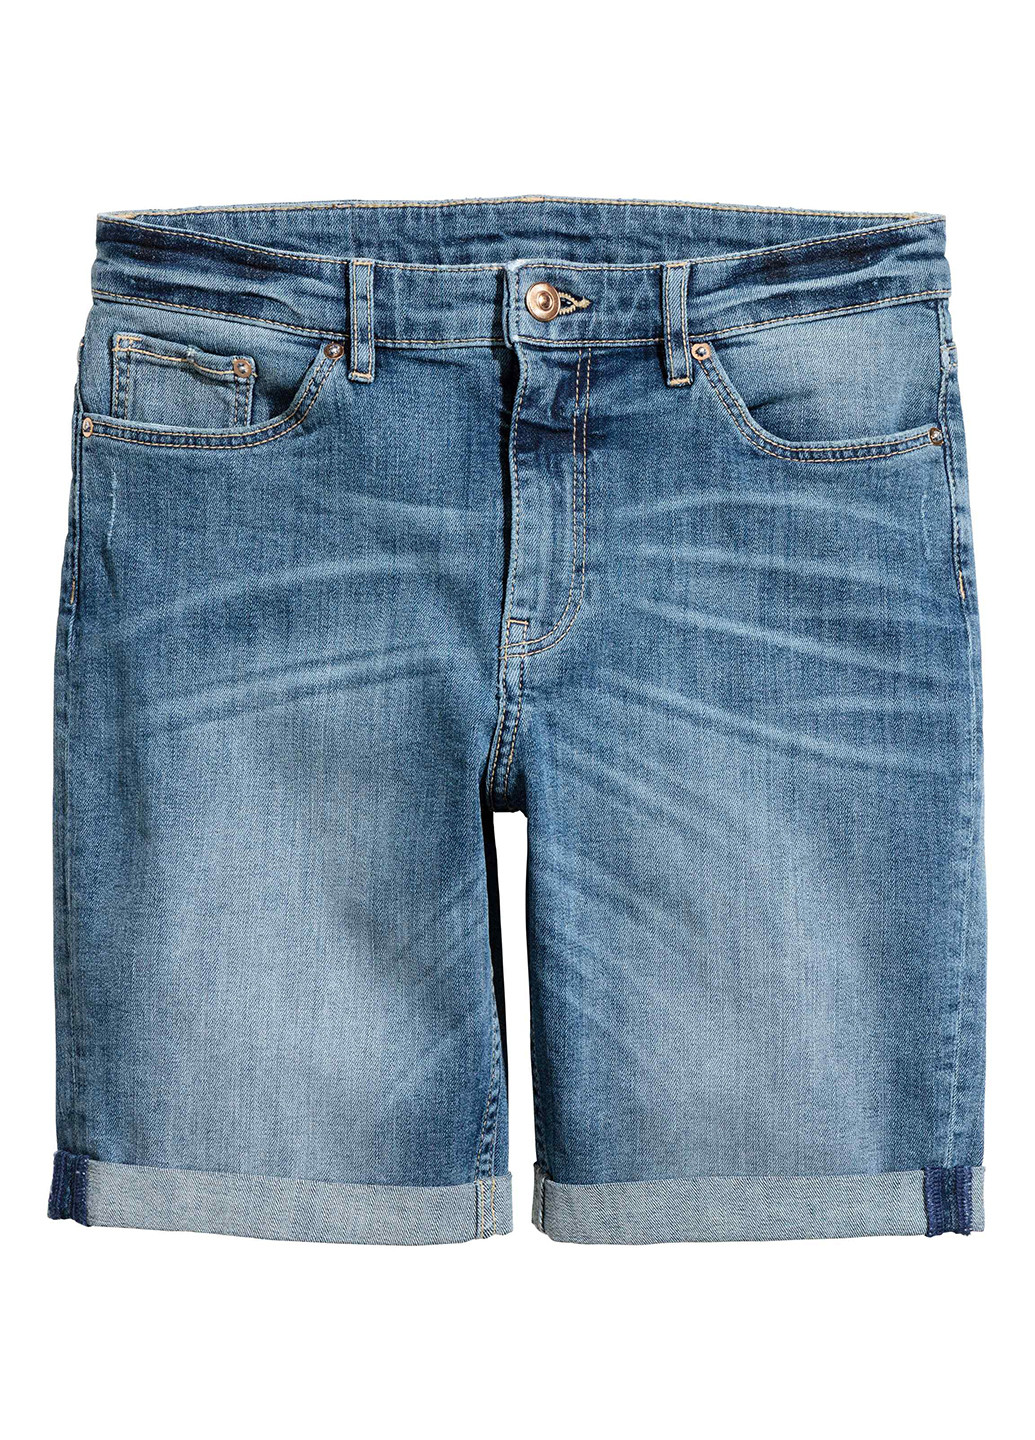 Шорты H&M однотонные синие джинсовые